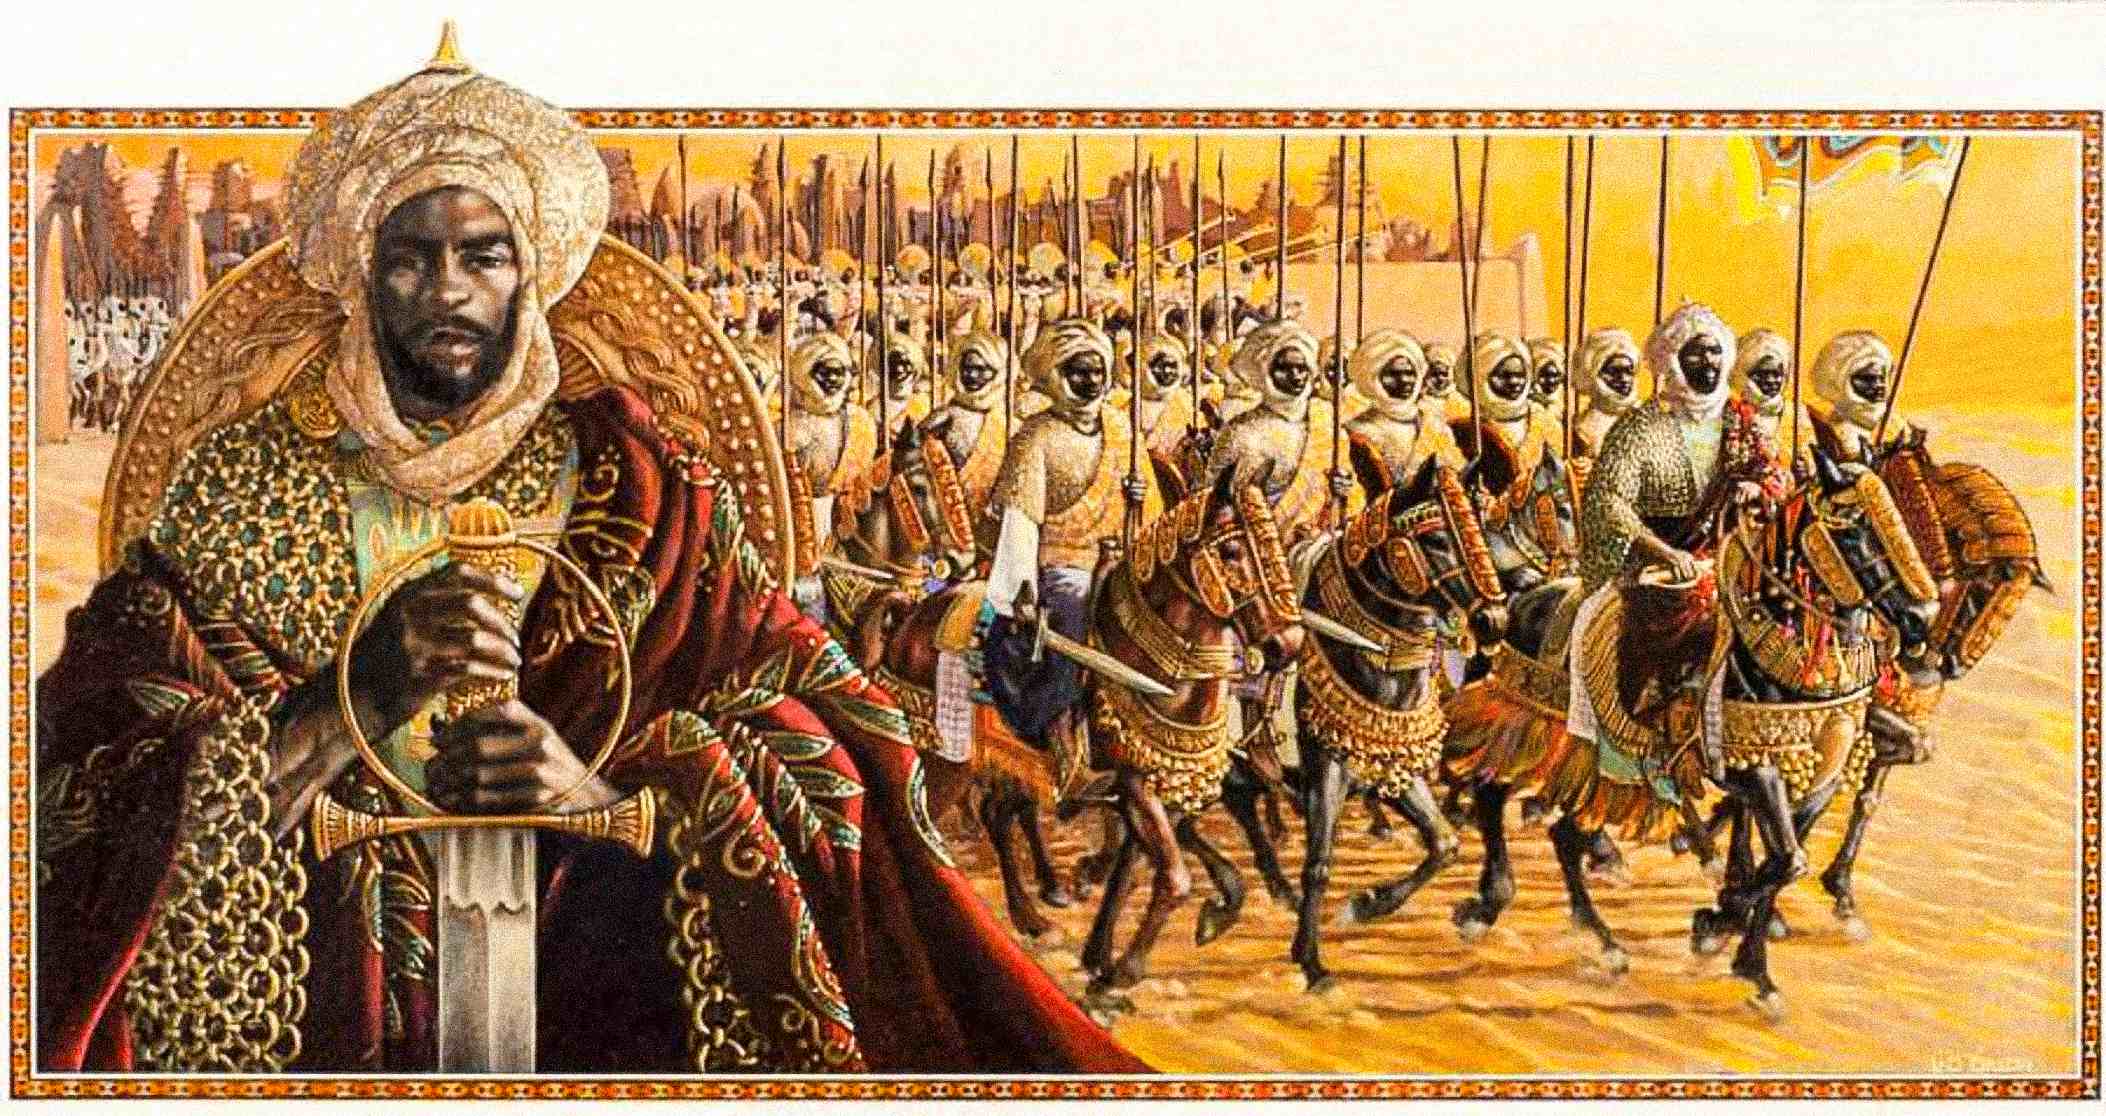 Reprezentare artistică a Imperiului Mansa Musa